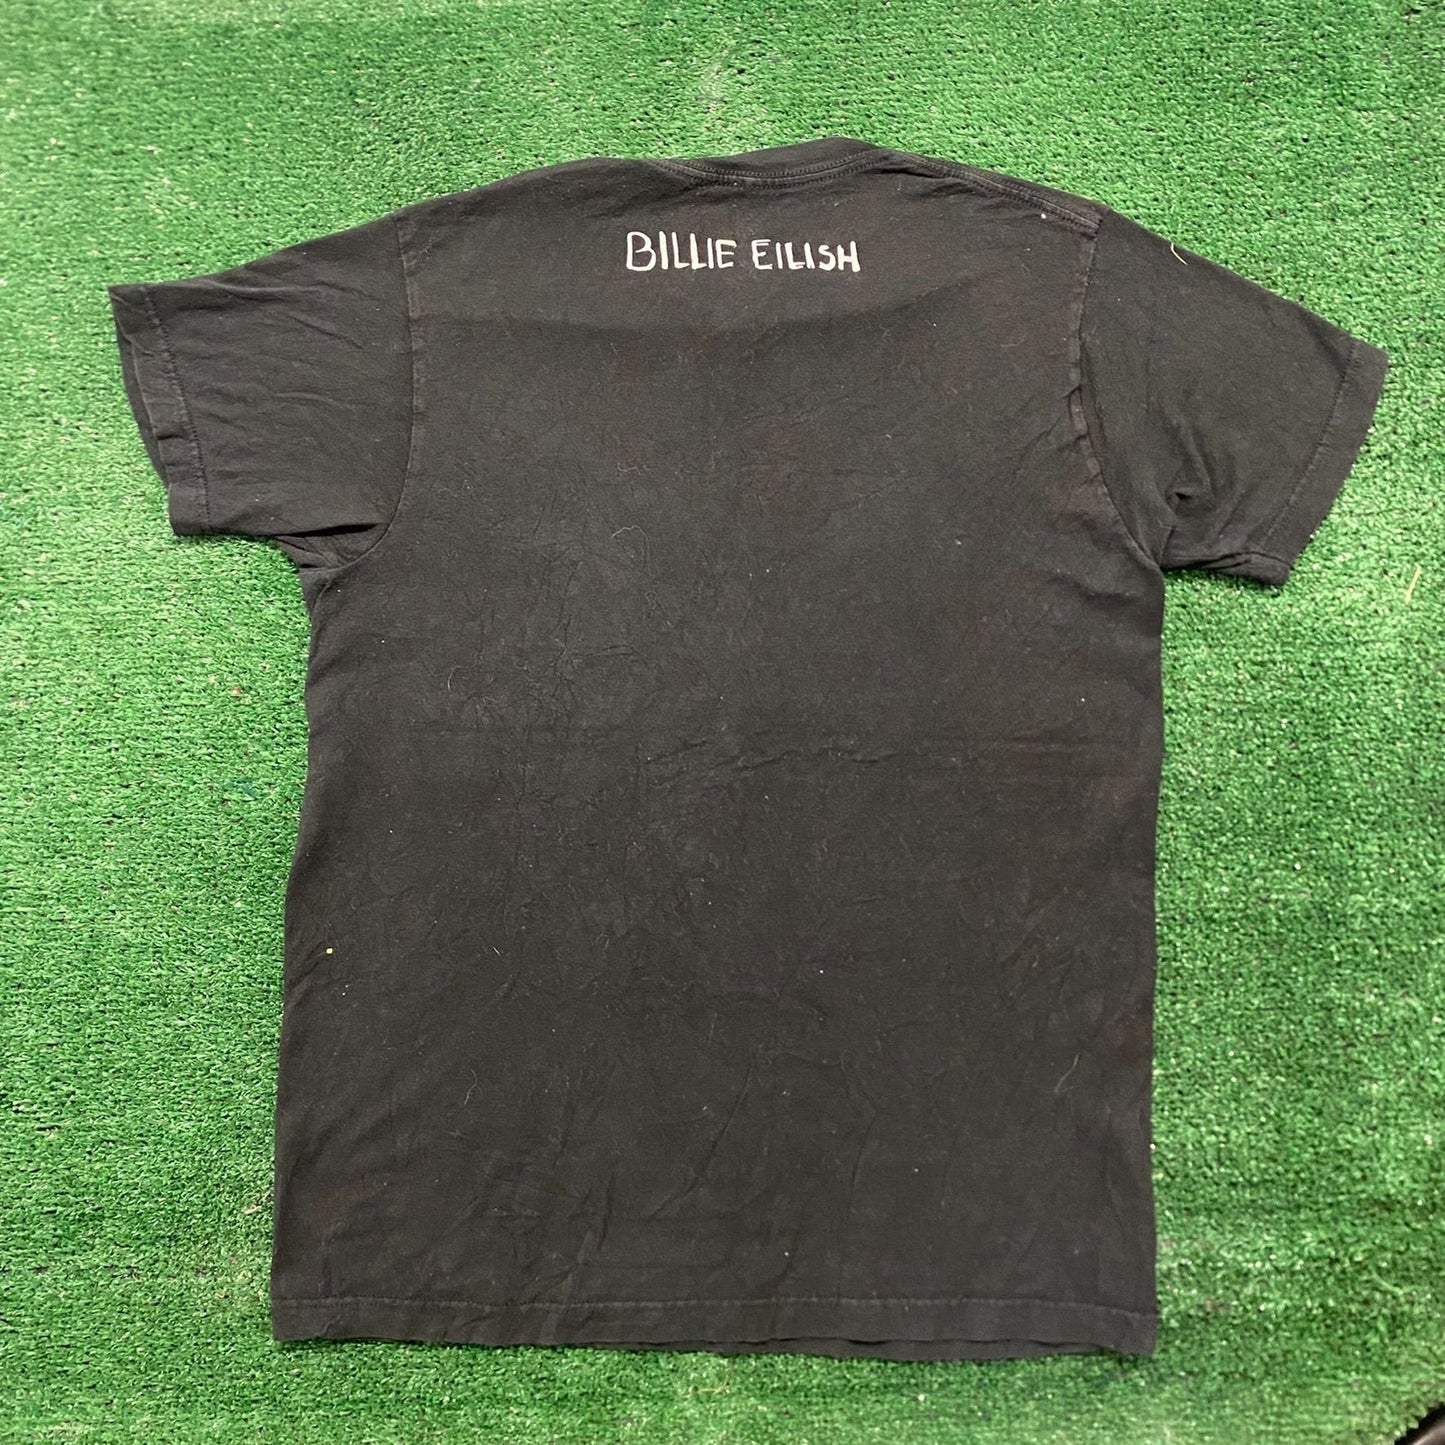 Essential Billie Eilish Album Art Goth Emo Band T-Shirt